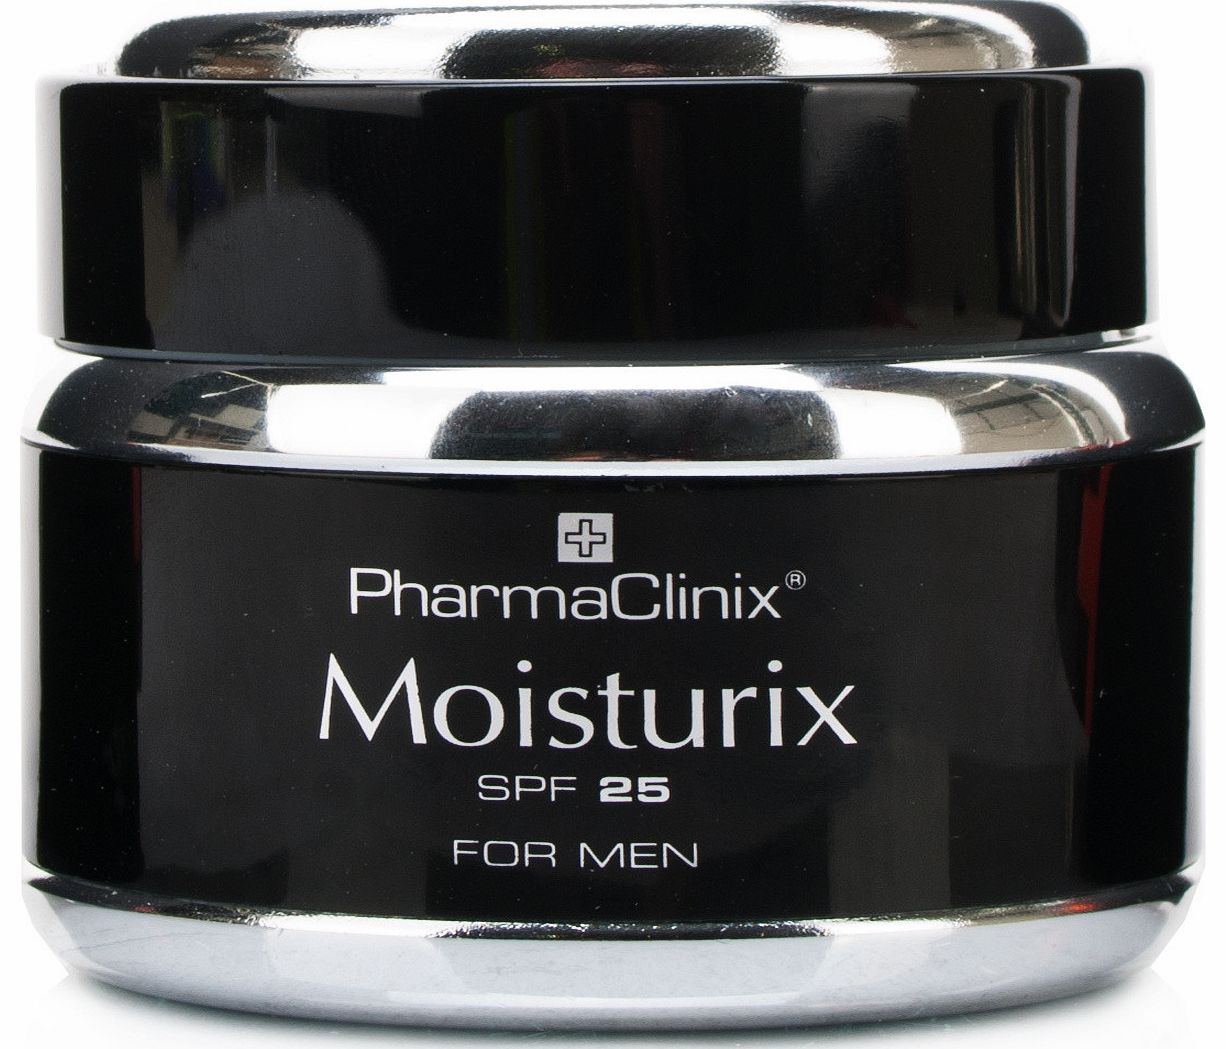 Moisturix Cream For Men